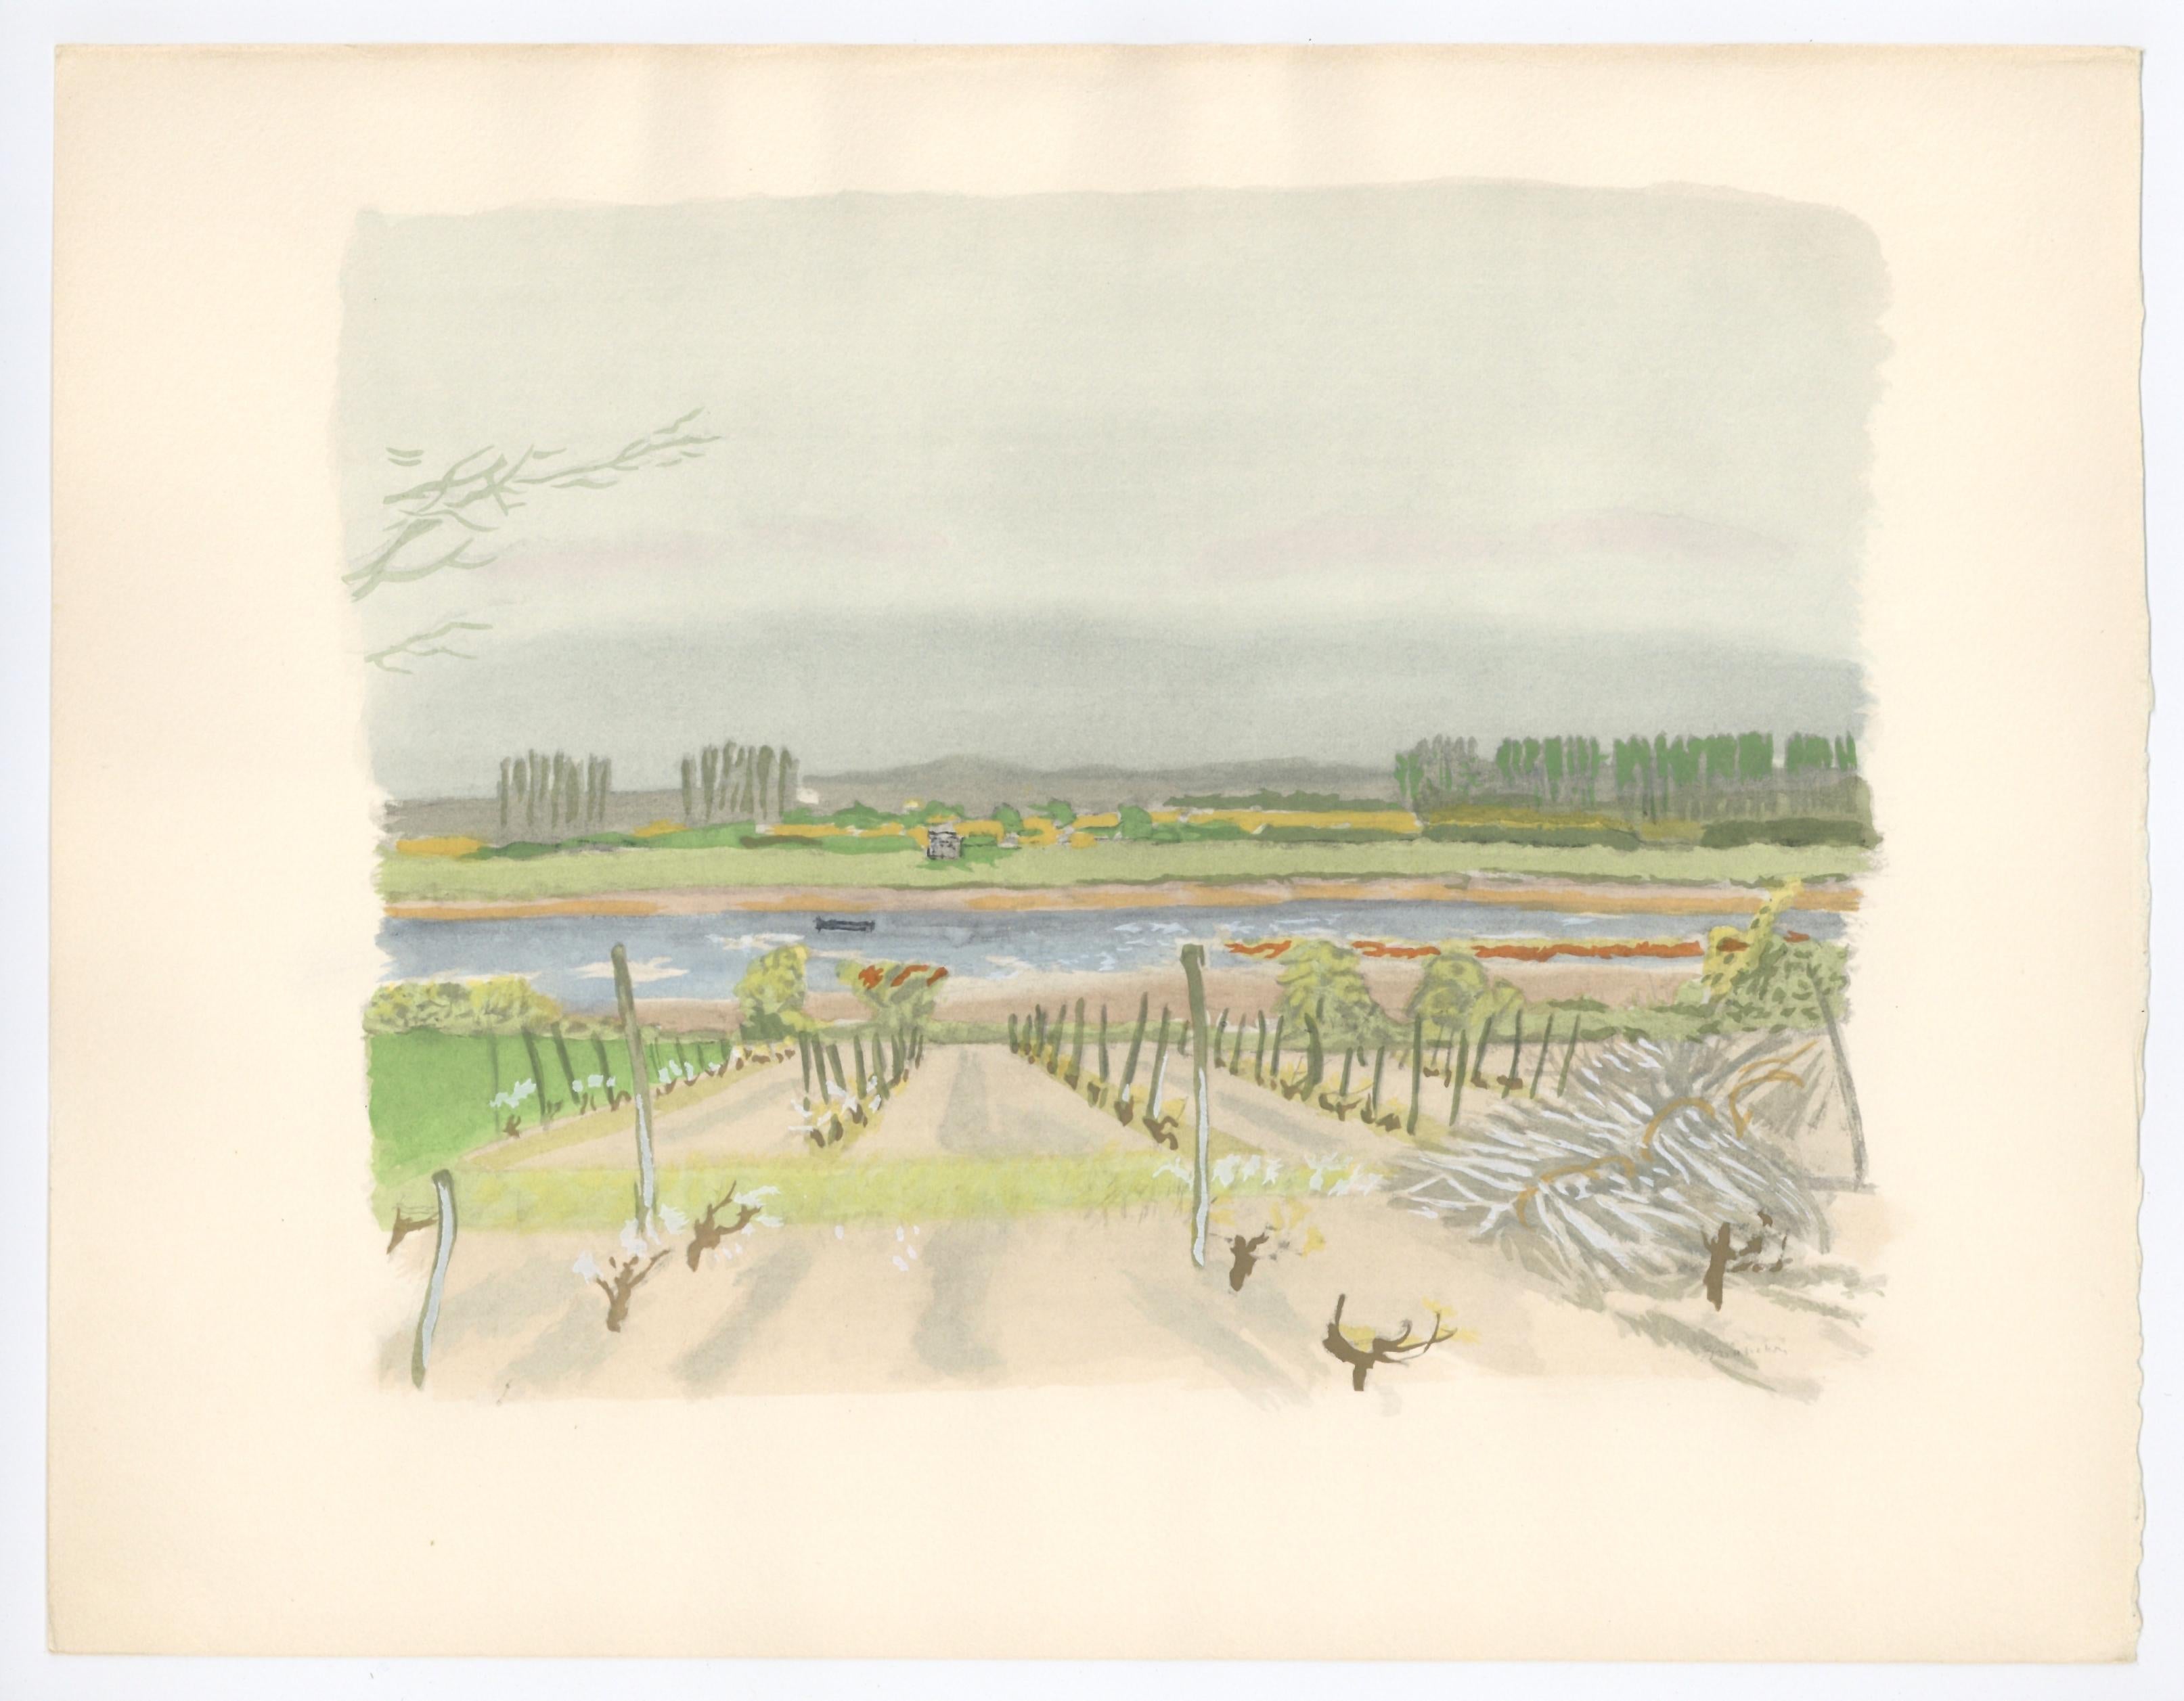 Medium: Pochoir (nach dem Aquarell). Gedruckt auf Arches-Papier im Jahr 1956 im Atelier Daniel Jacomet für die Mappe Vins, fleurs et flammes, in einer limitierten Auflage von 380 Stück. Größe: 10 x 12 3/4 Zoll (250 x 324 mm). Nicht unterzeichnet. 